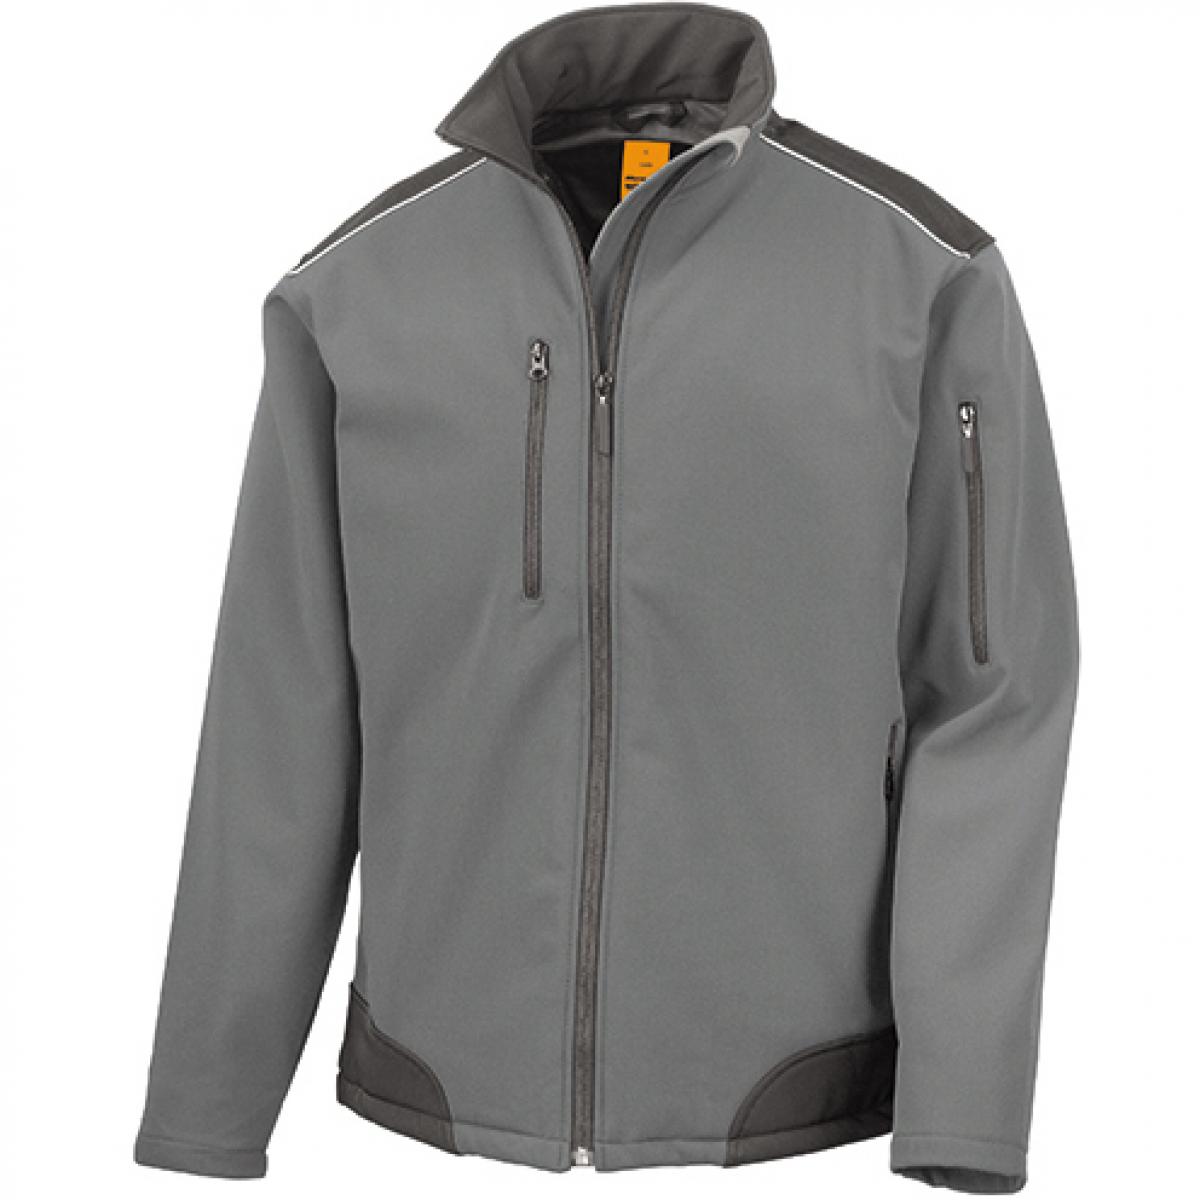 Hersteller: Result WORK-GUARD Herstellernummer: R124X Artikelbezeichnung: Ripstop Softshell Work Jacket / Arbeitsjacke Farbe: Grey/Black